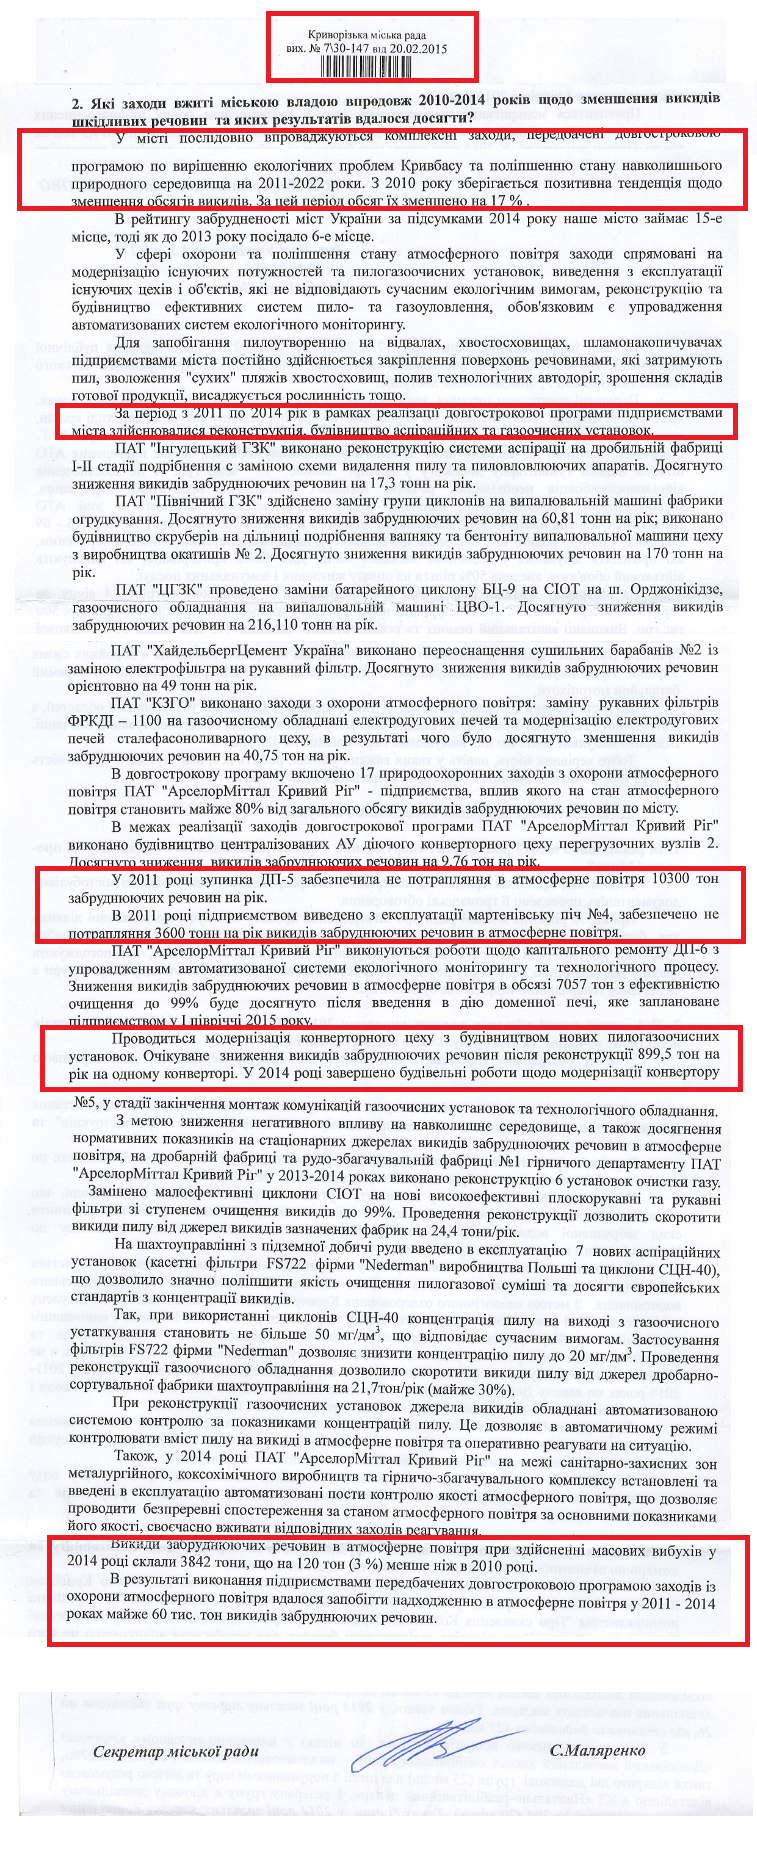 Лист секретаря міської ради С. Маляренко